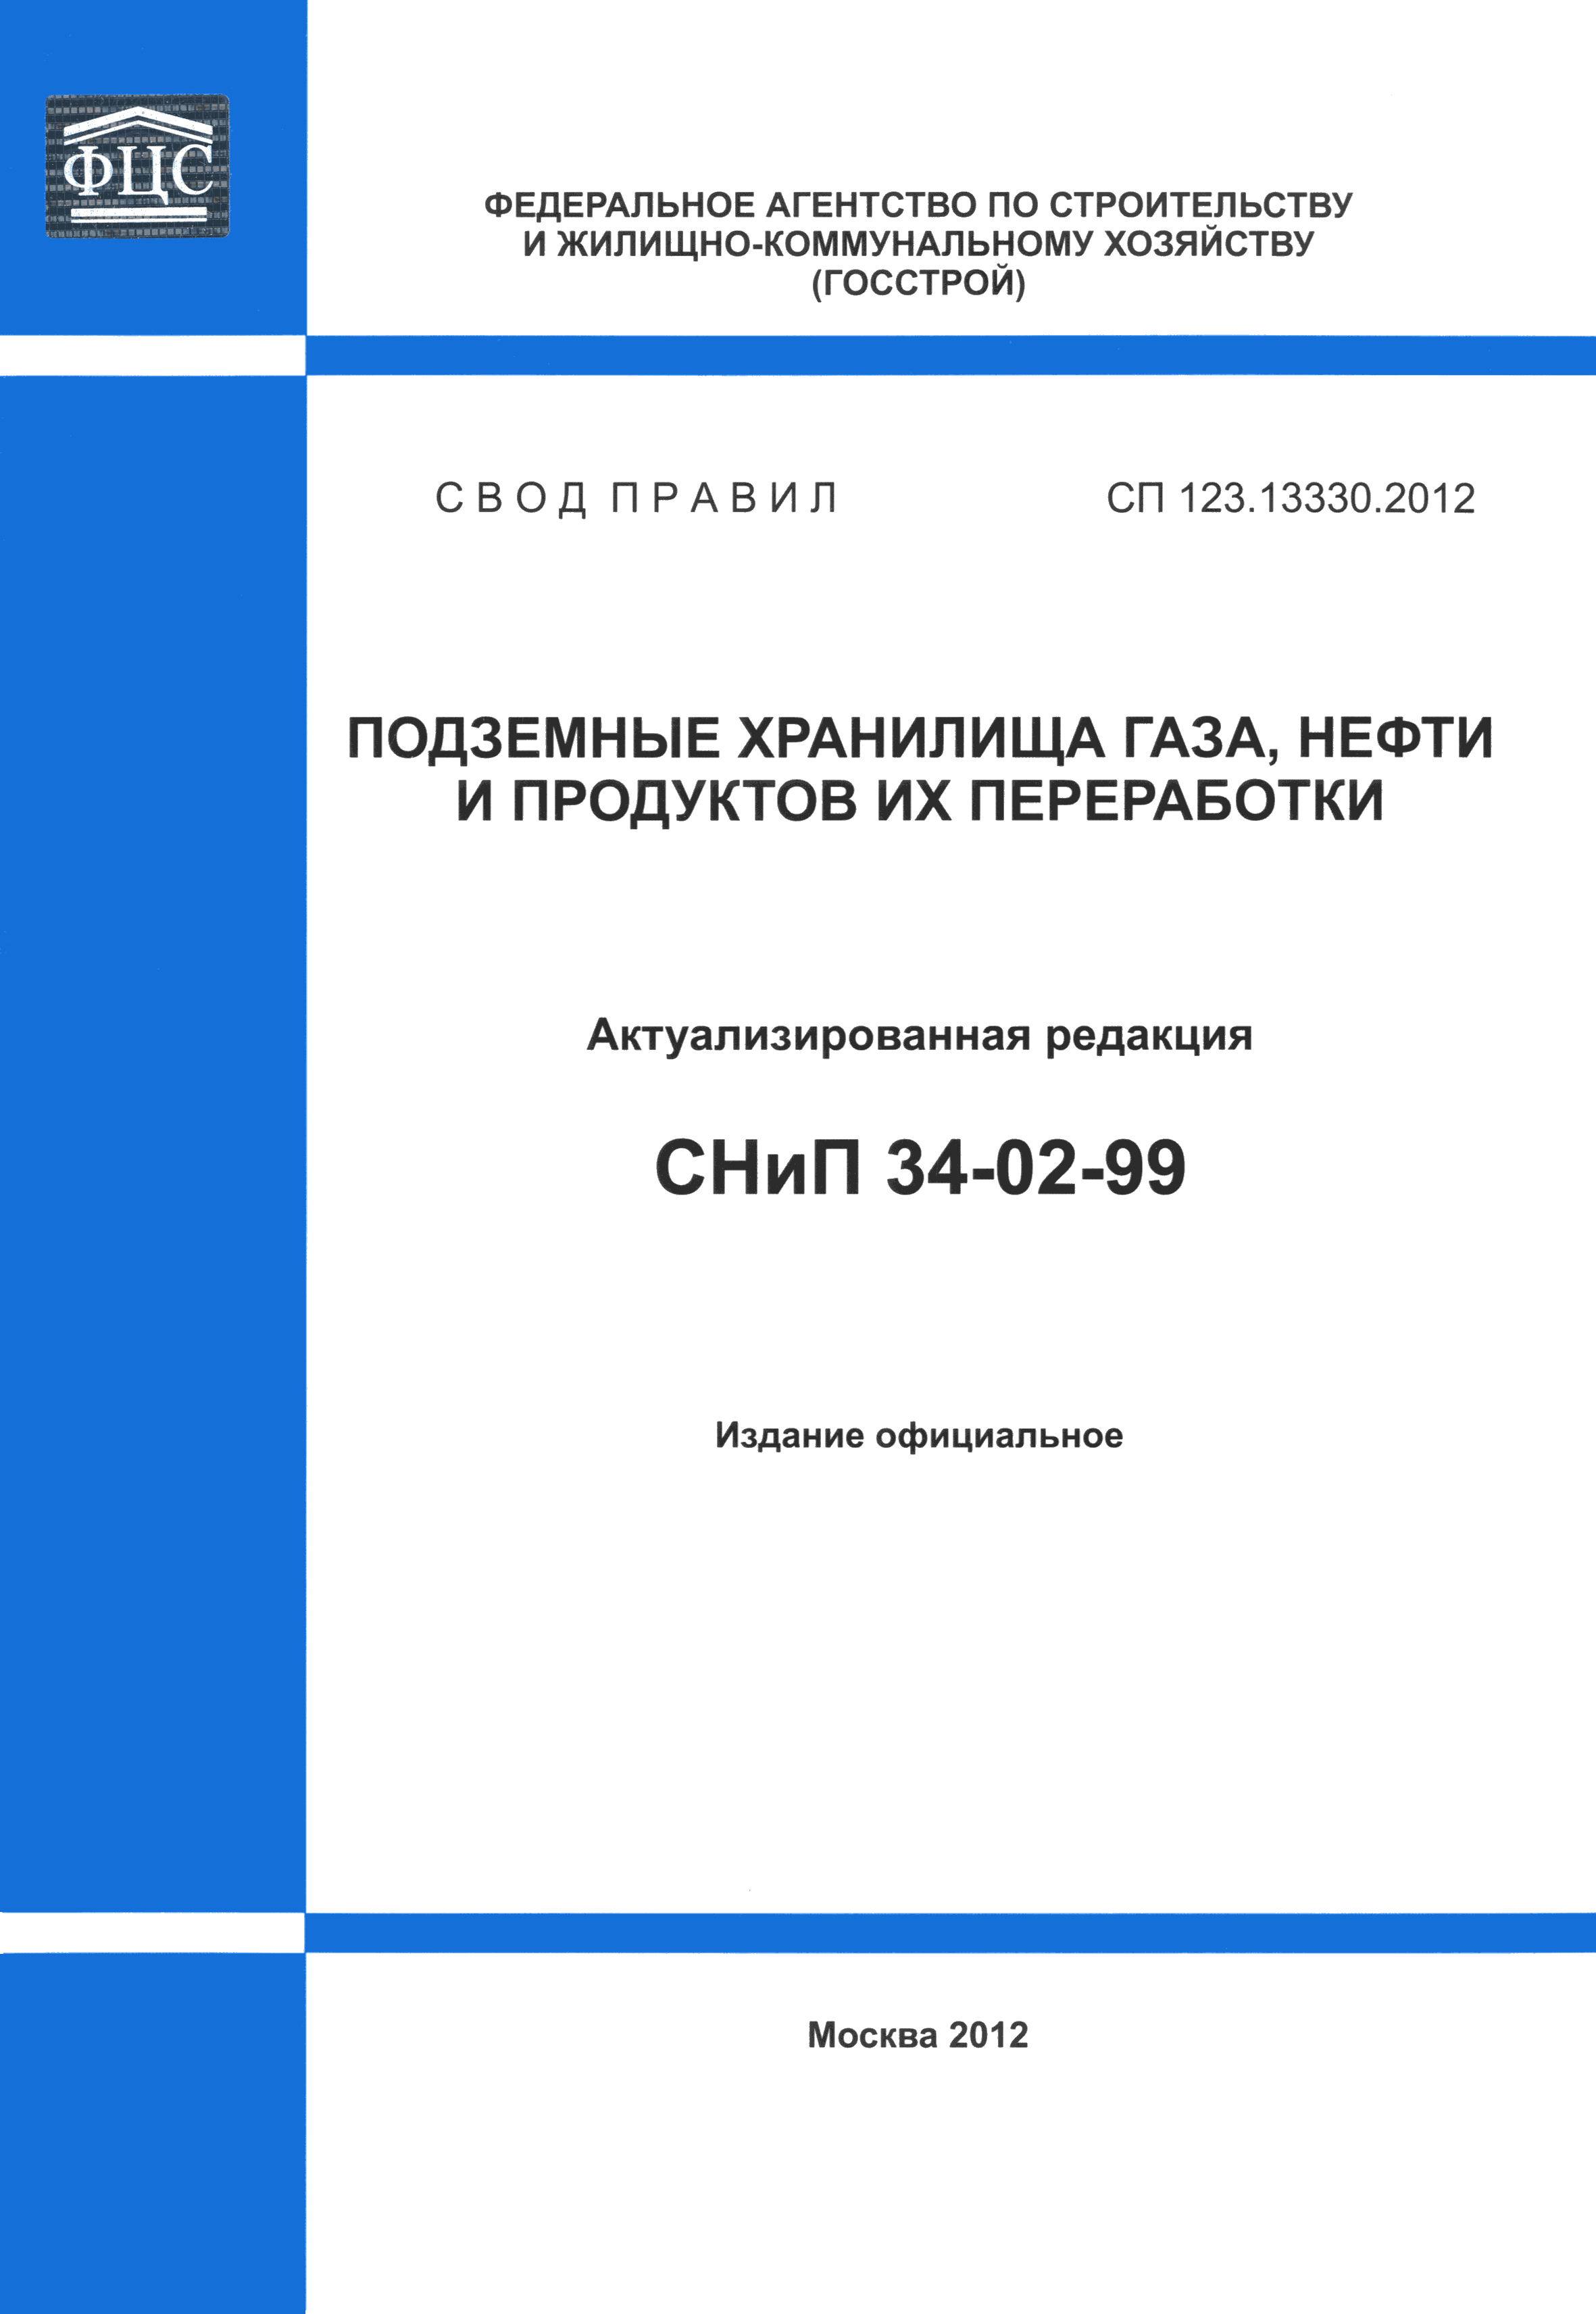 СП 123.13330.2012